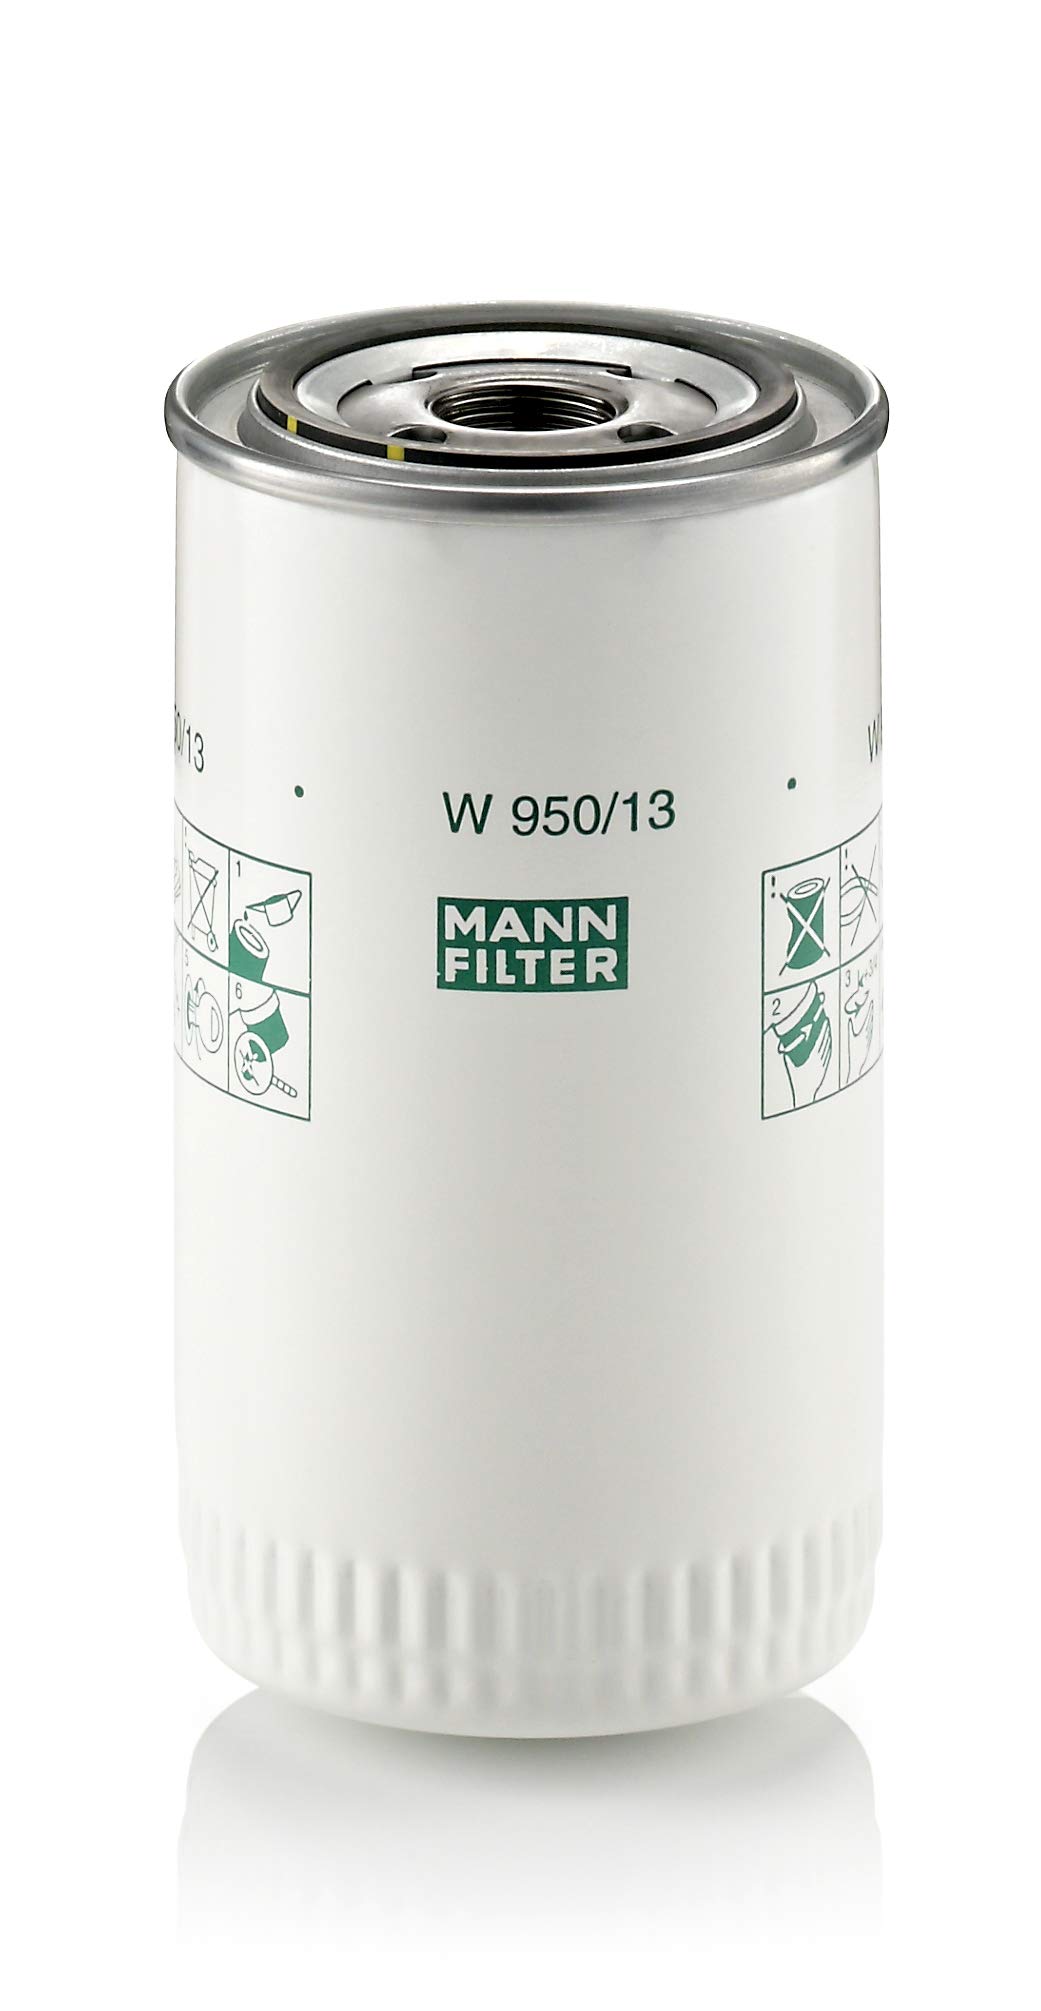 MANN-FILTER W 950/13 Ölfilter – Getriebefilter – Für PKW und Nutzfahrzeuge von MANN-FILTER